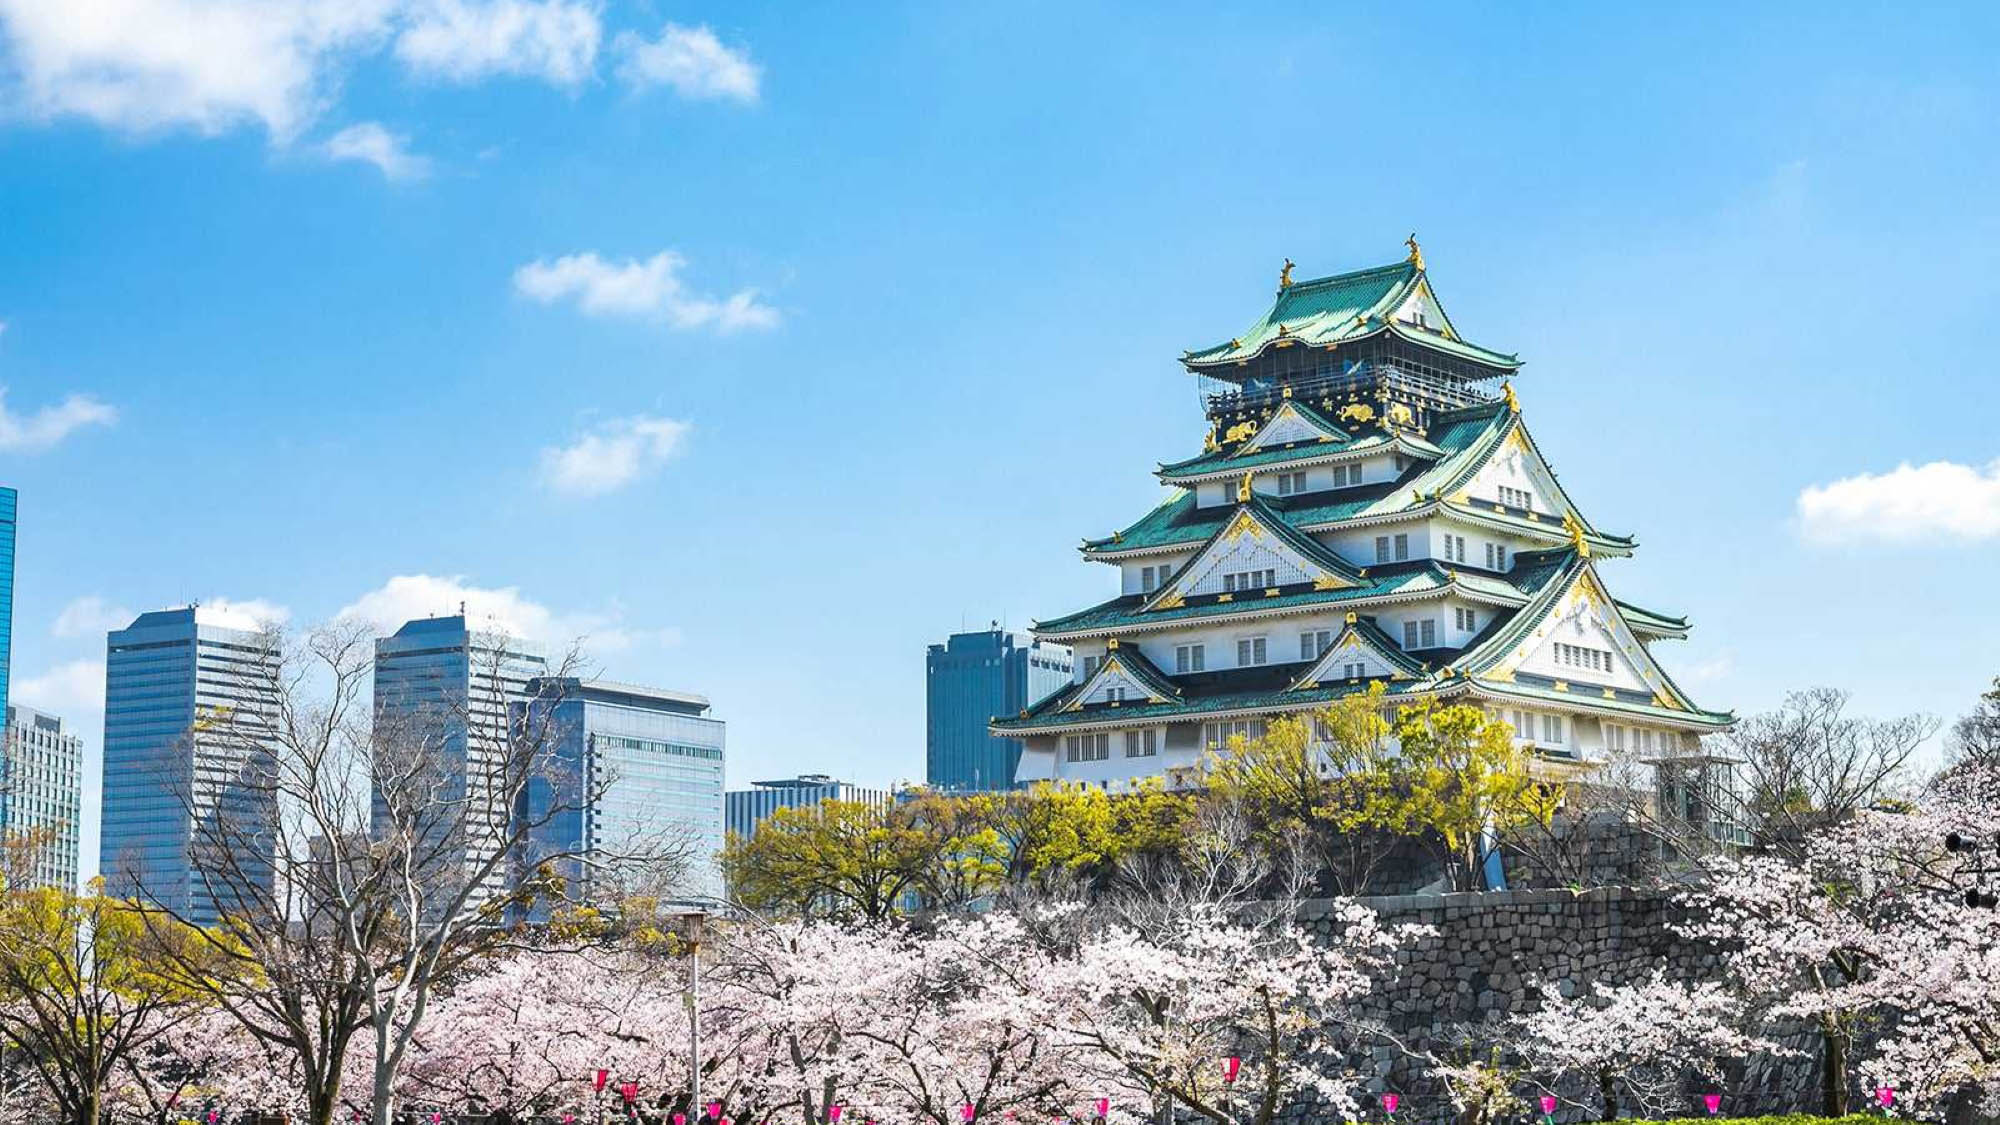 【大阪城天守閣】最上階の展望台、黄金の茶室など見どころも多い人気の観光スポットです。